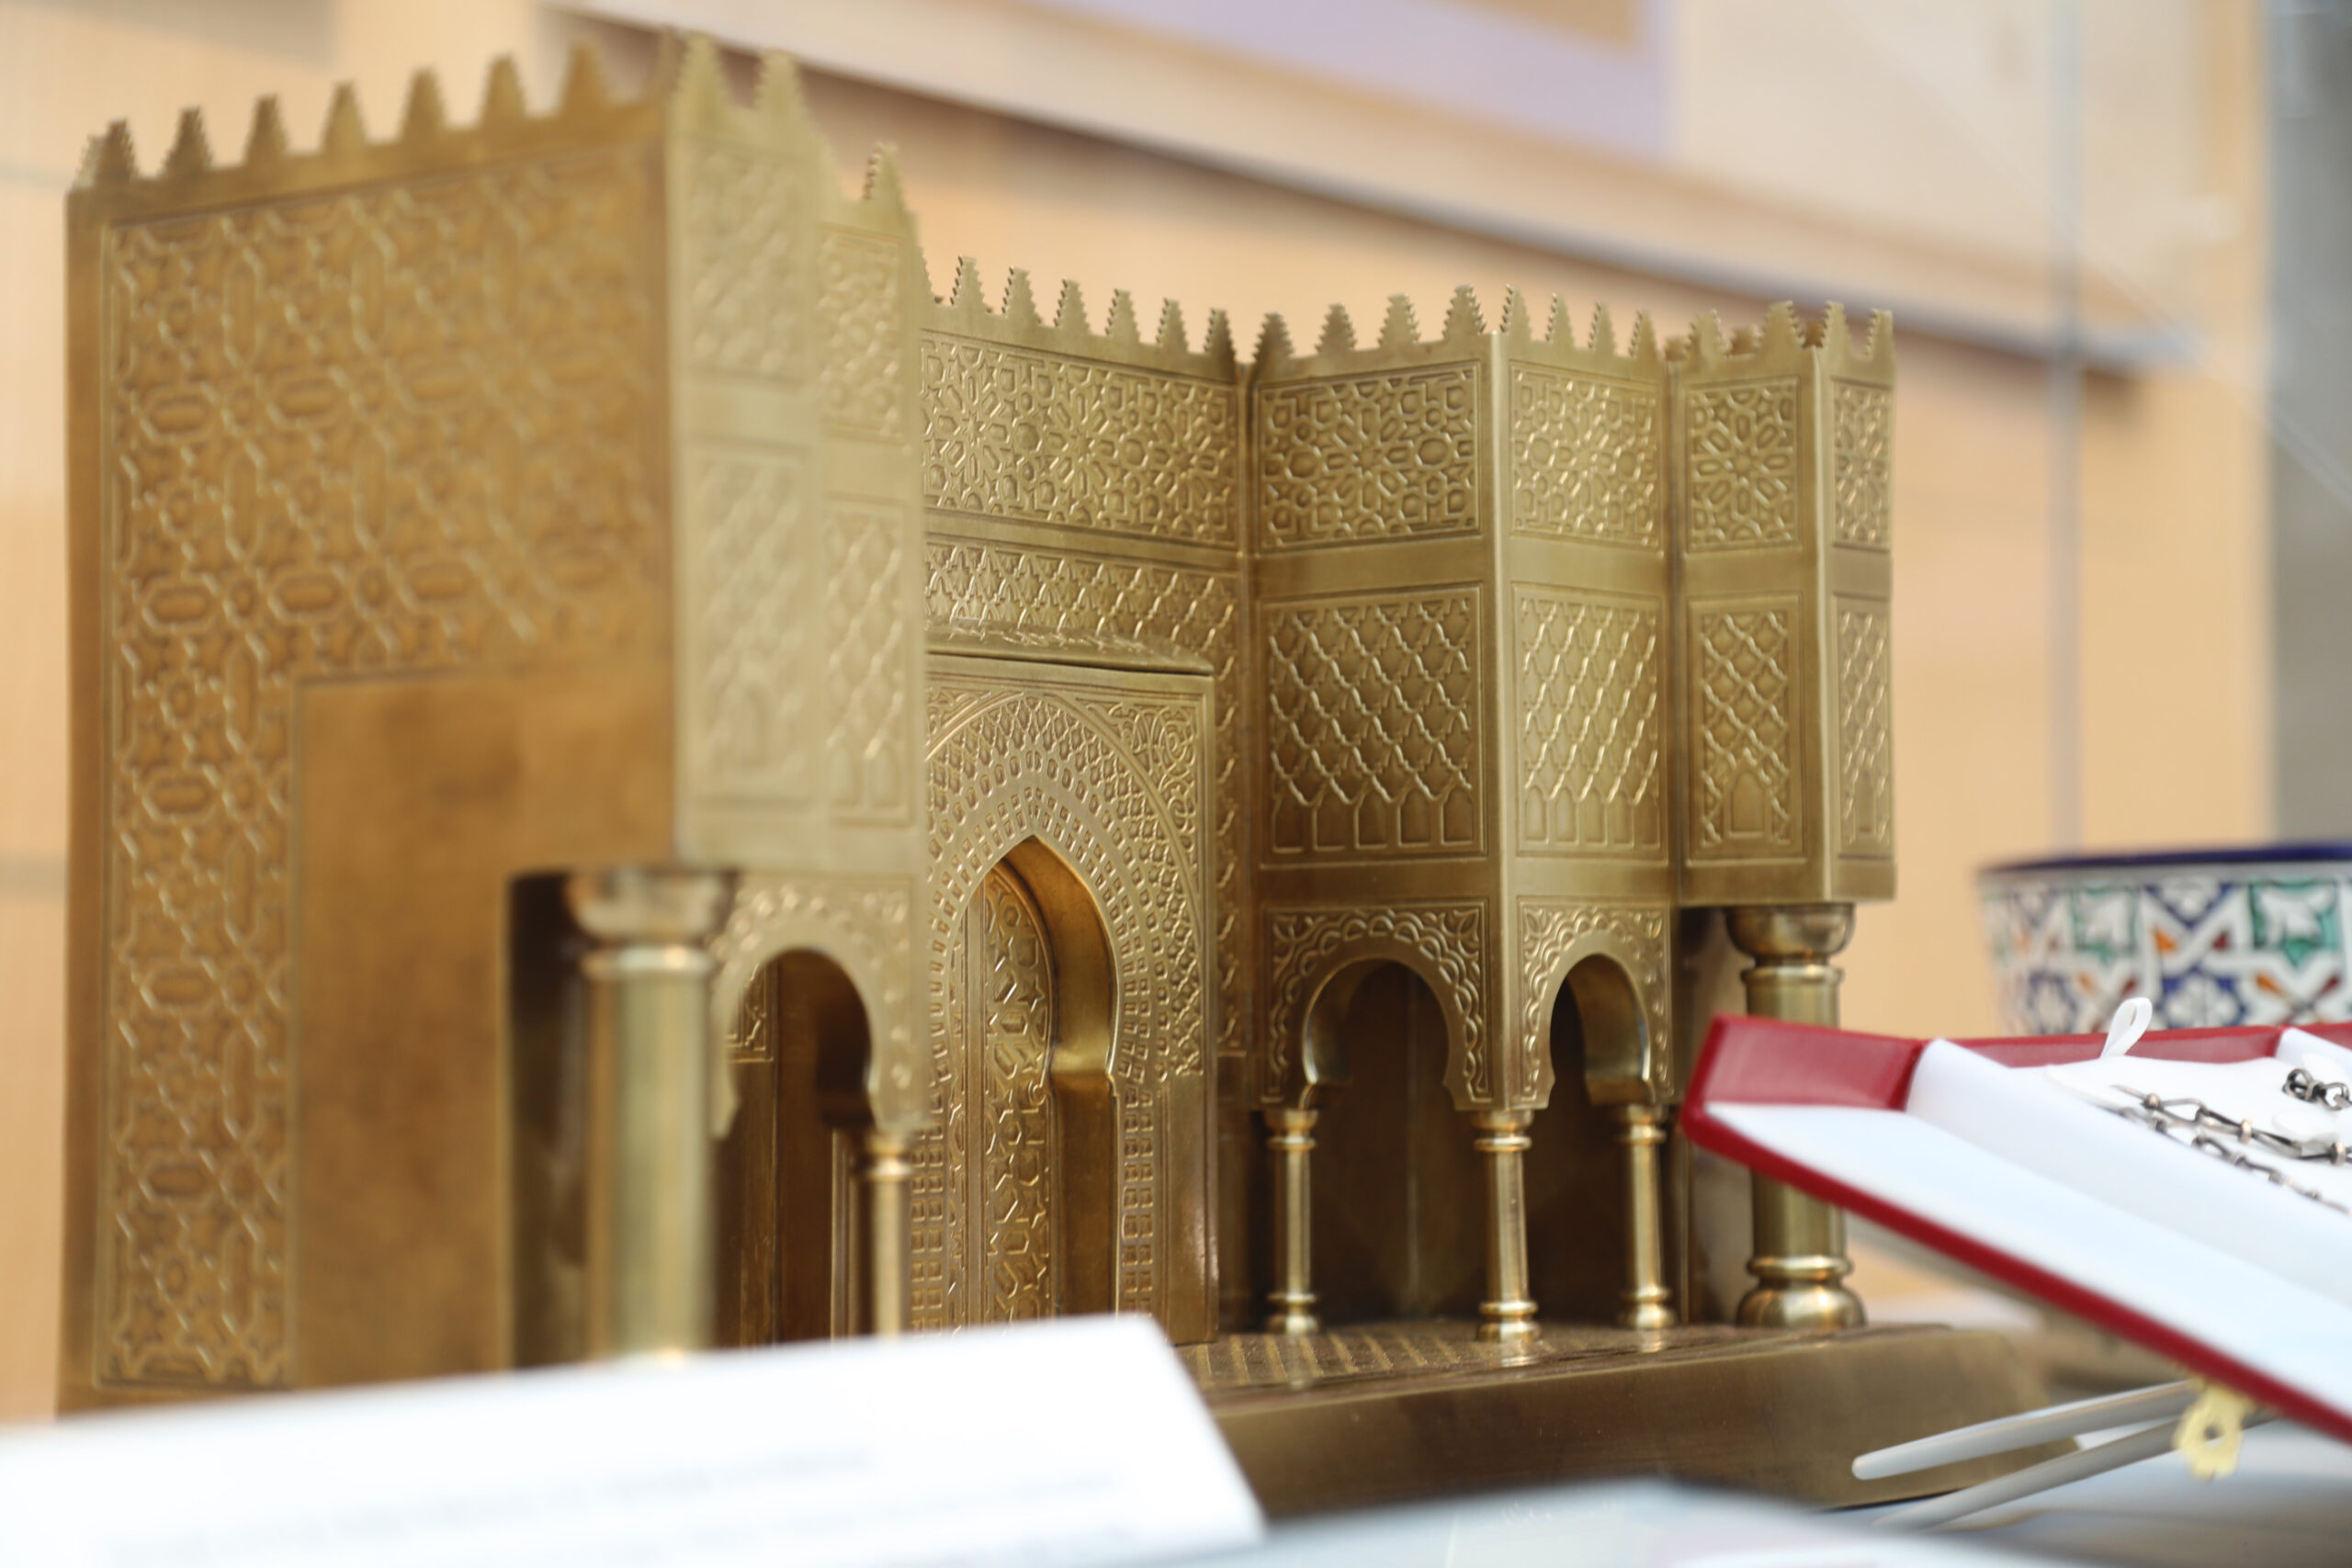 Gold Model of the Bab Mansur al-'Alj Gate at Meknes